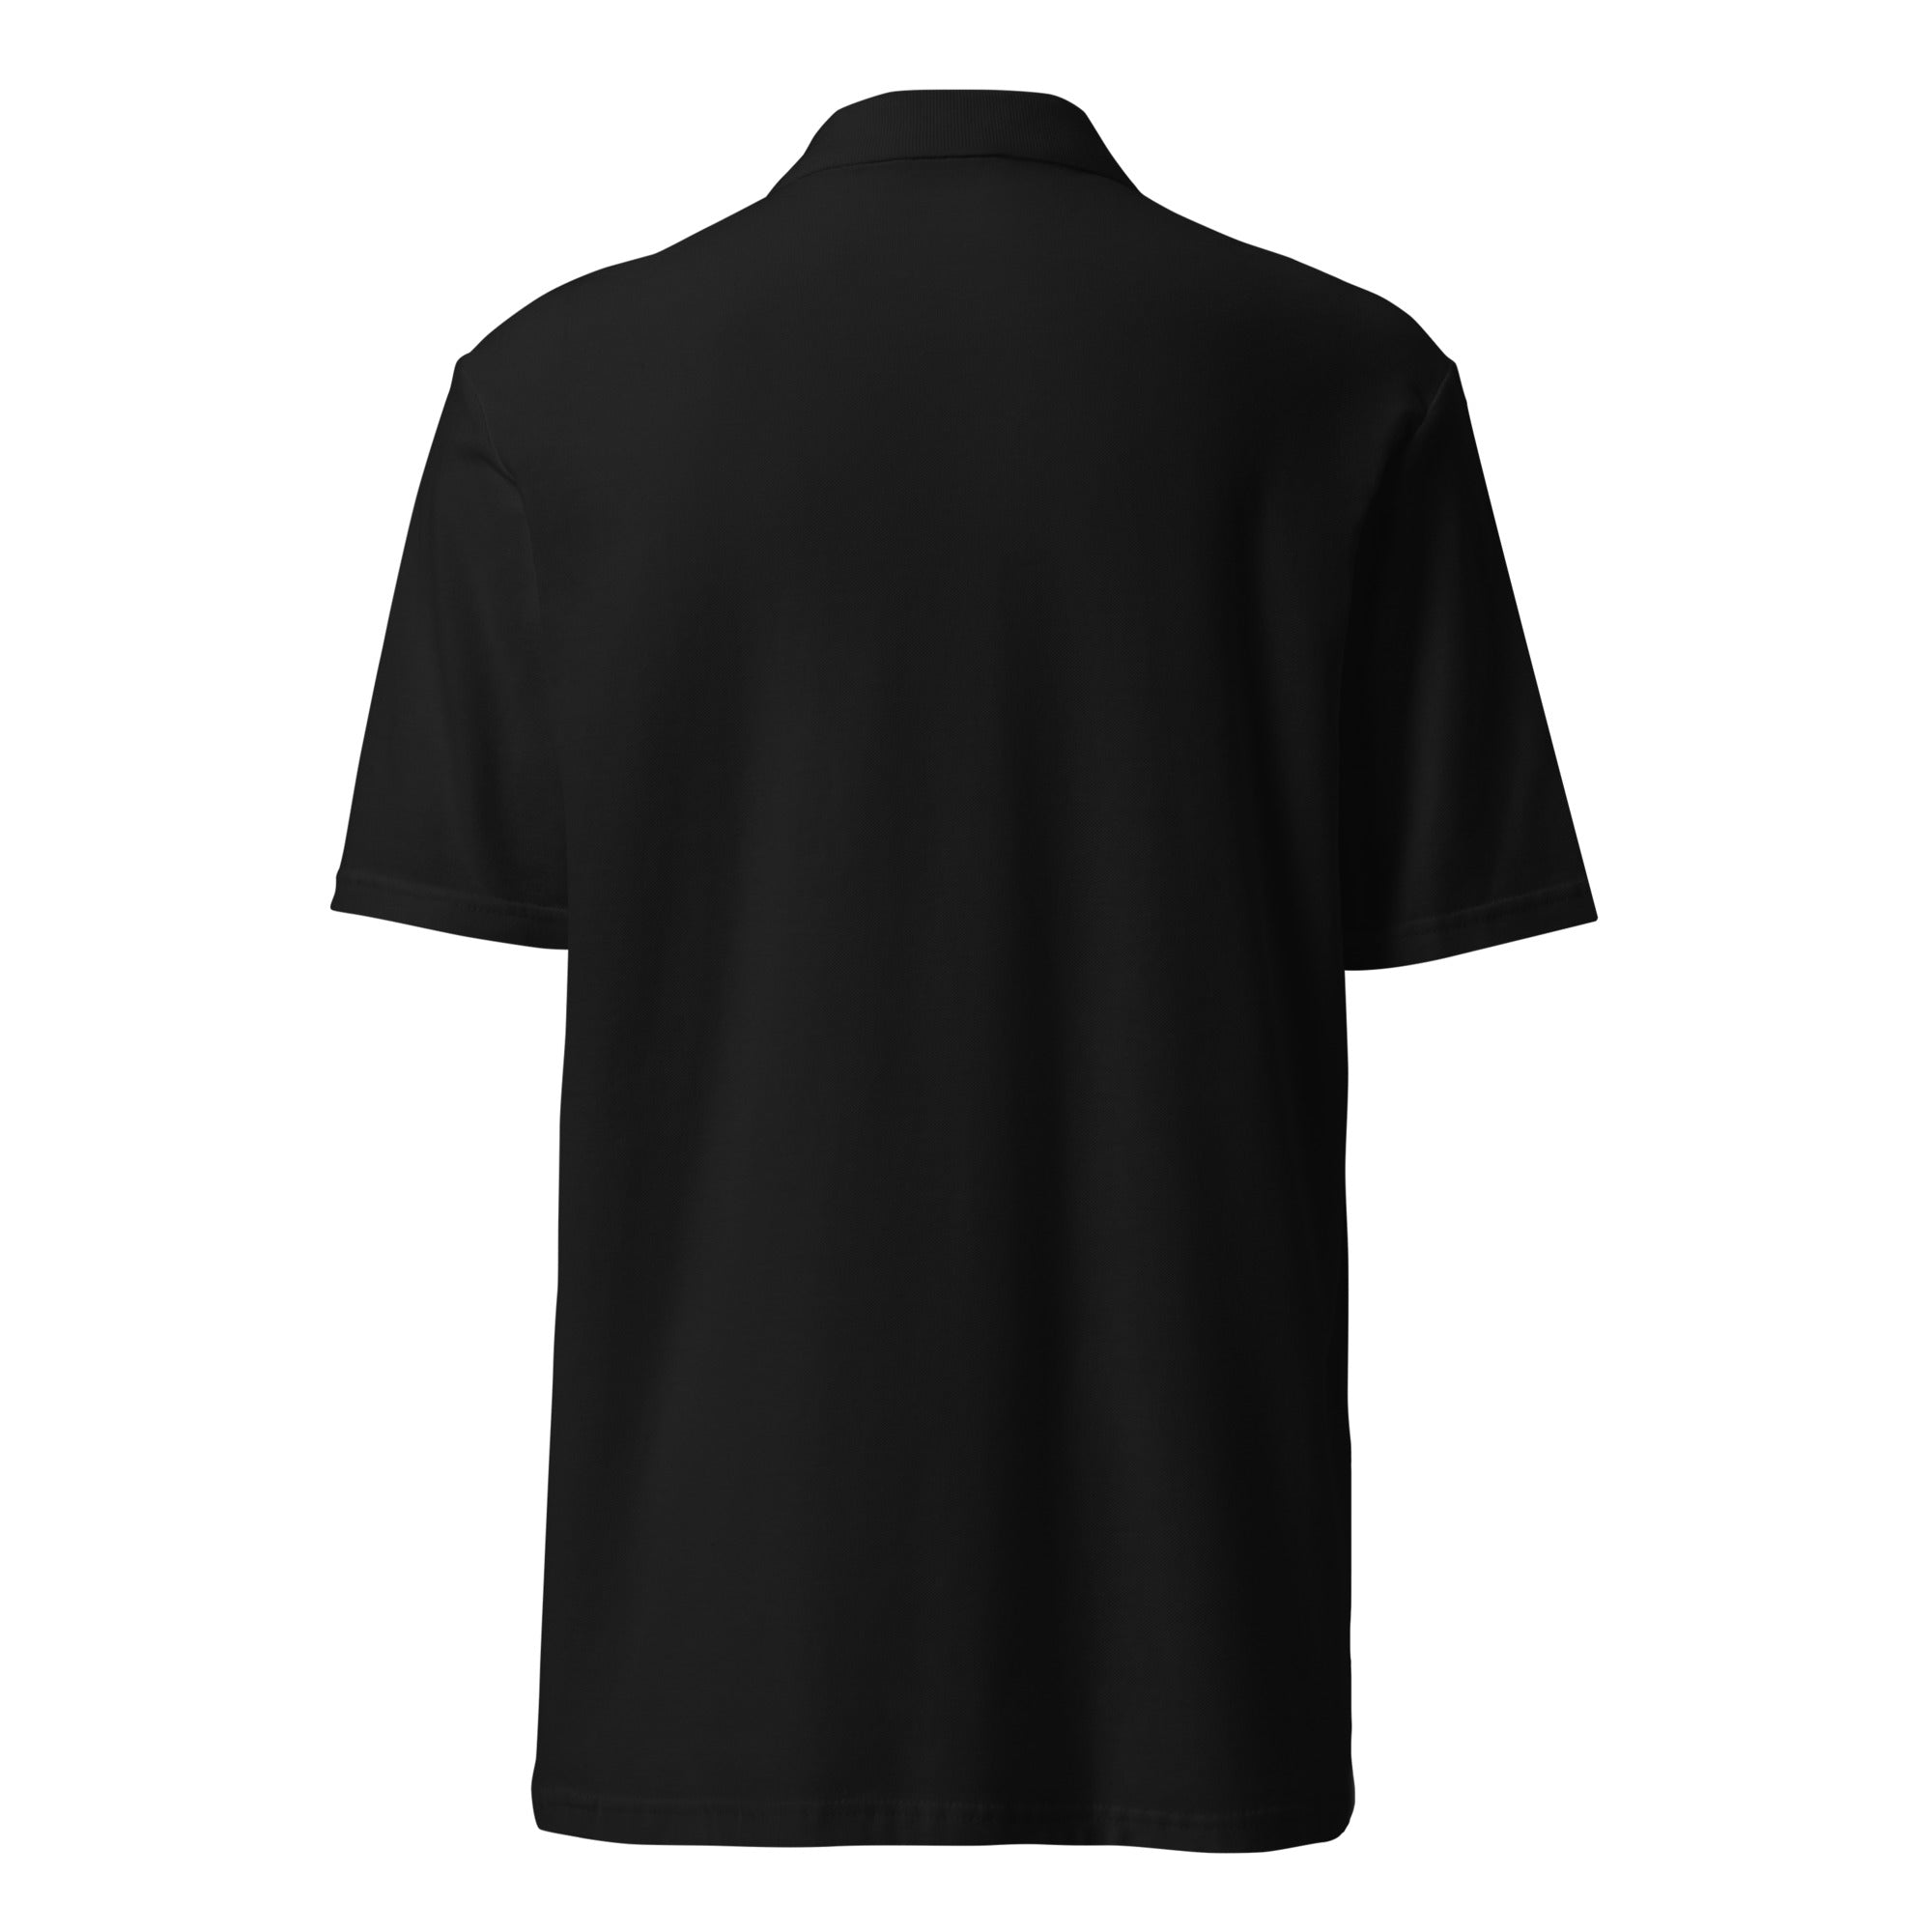 PT Unisex Pique Polo Shirt